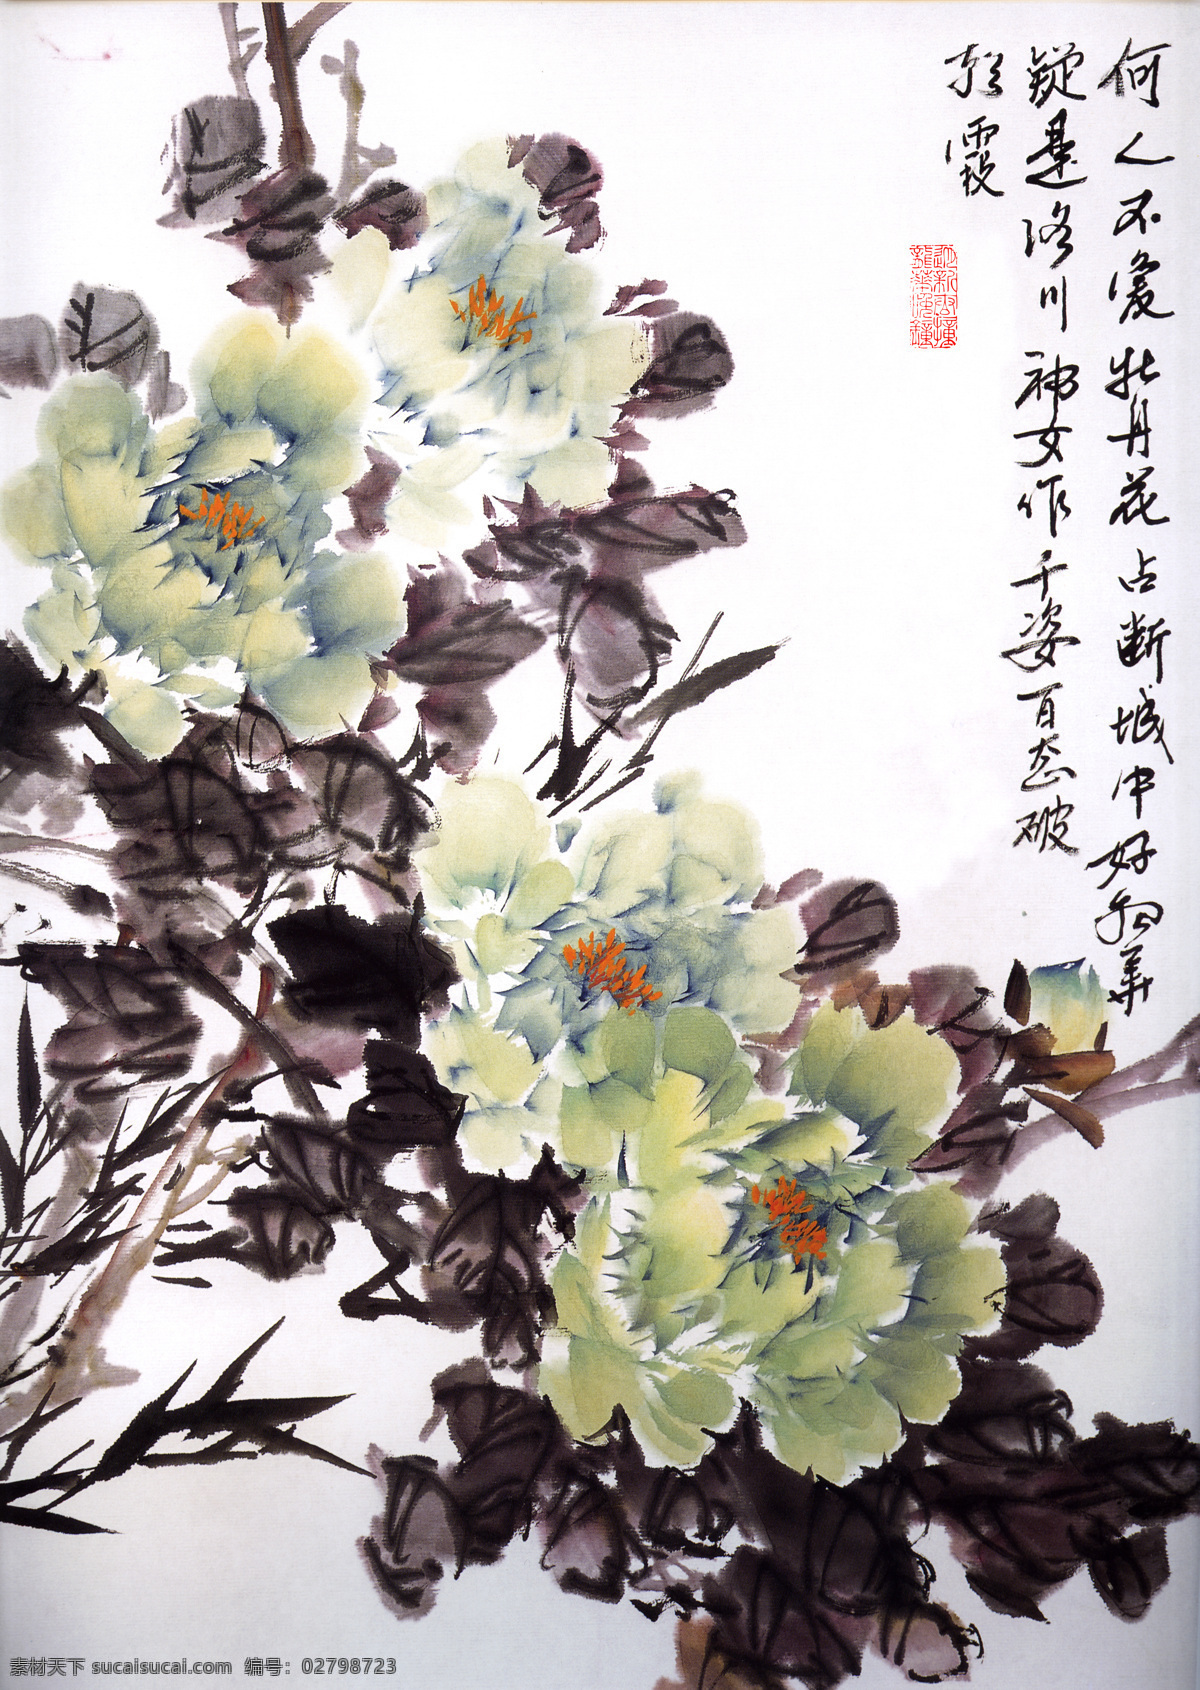 水墨 牡丹 国画 中国画 绘画艺术 装饰画 水墨画 书画文字 文化艺术